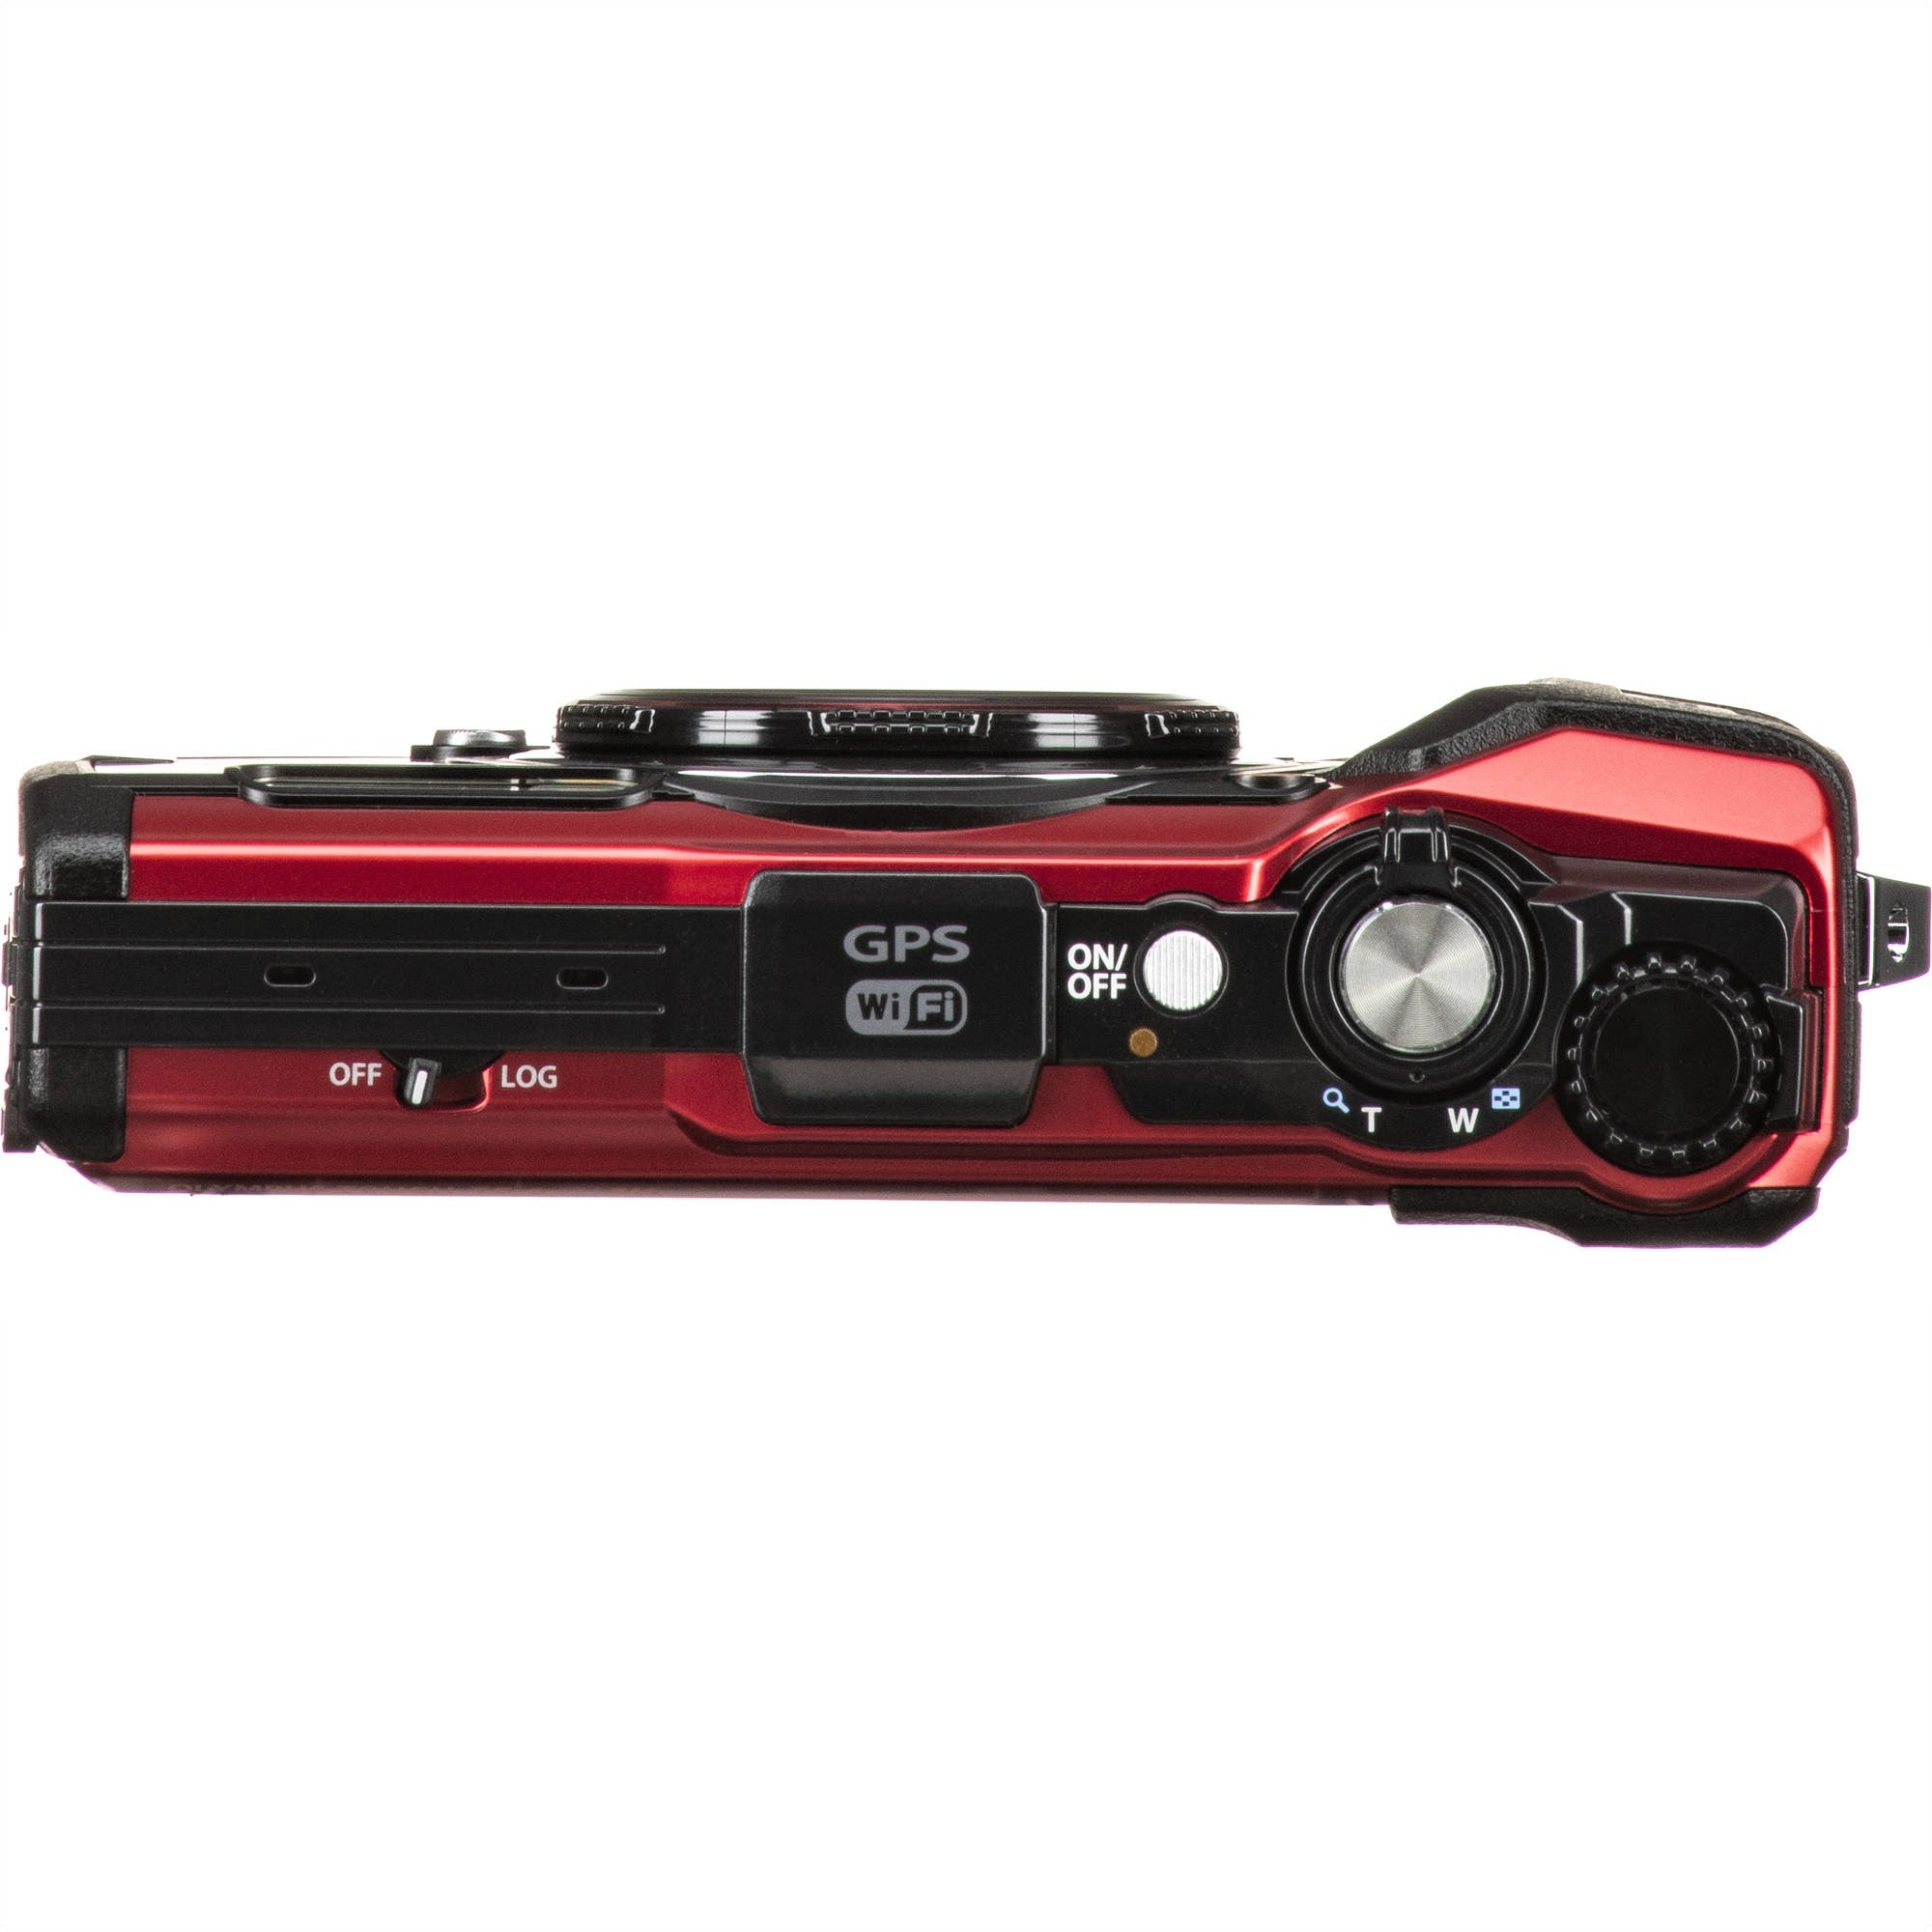 Olympus Tough TG-6 Digital Camera (Red) - Top View